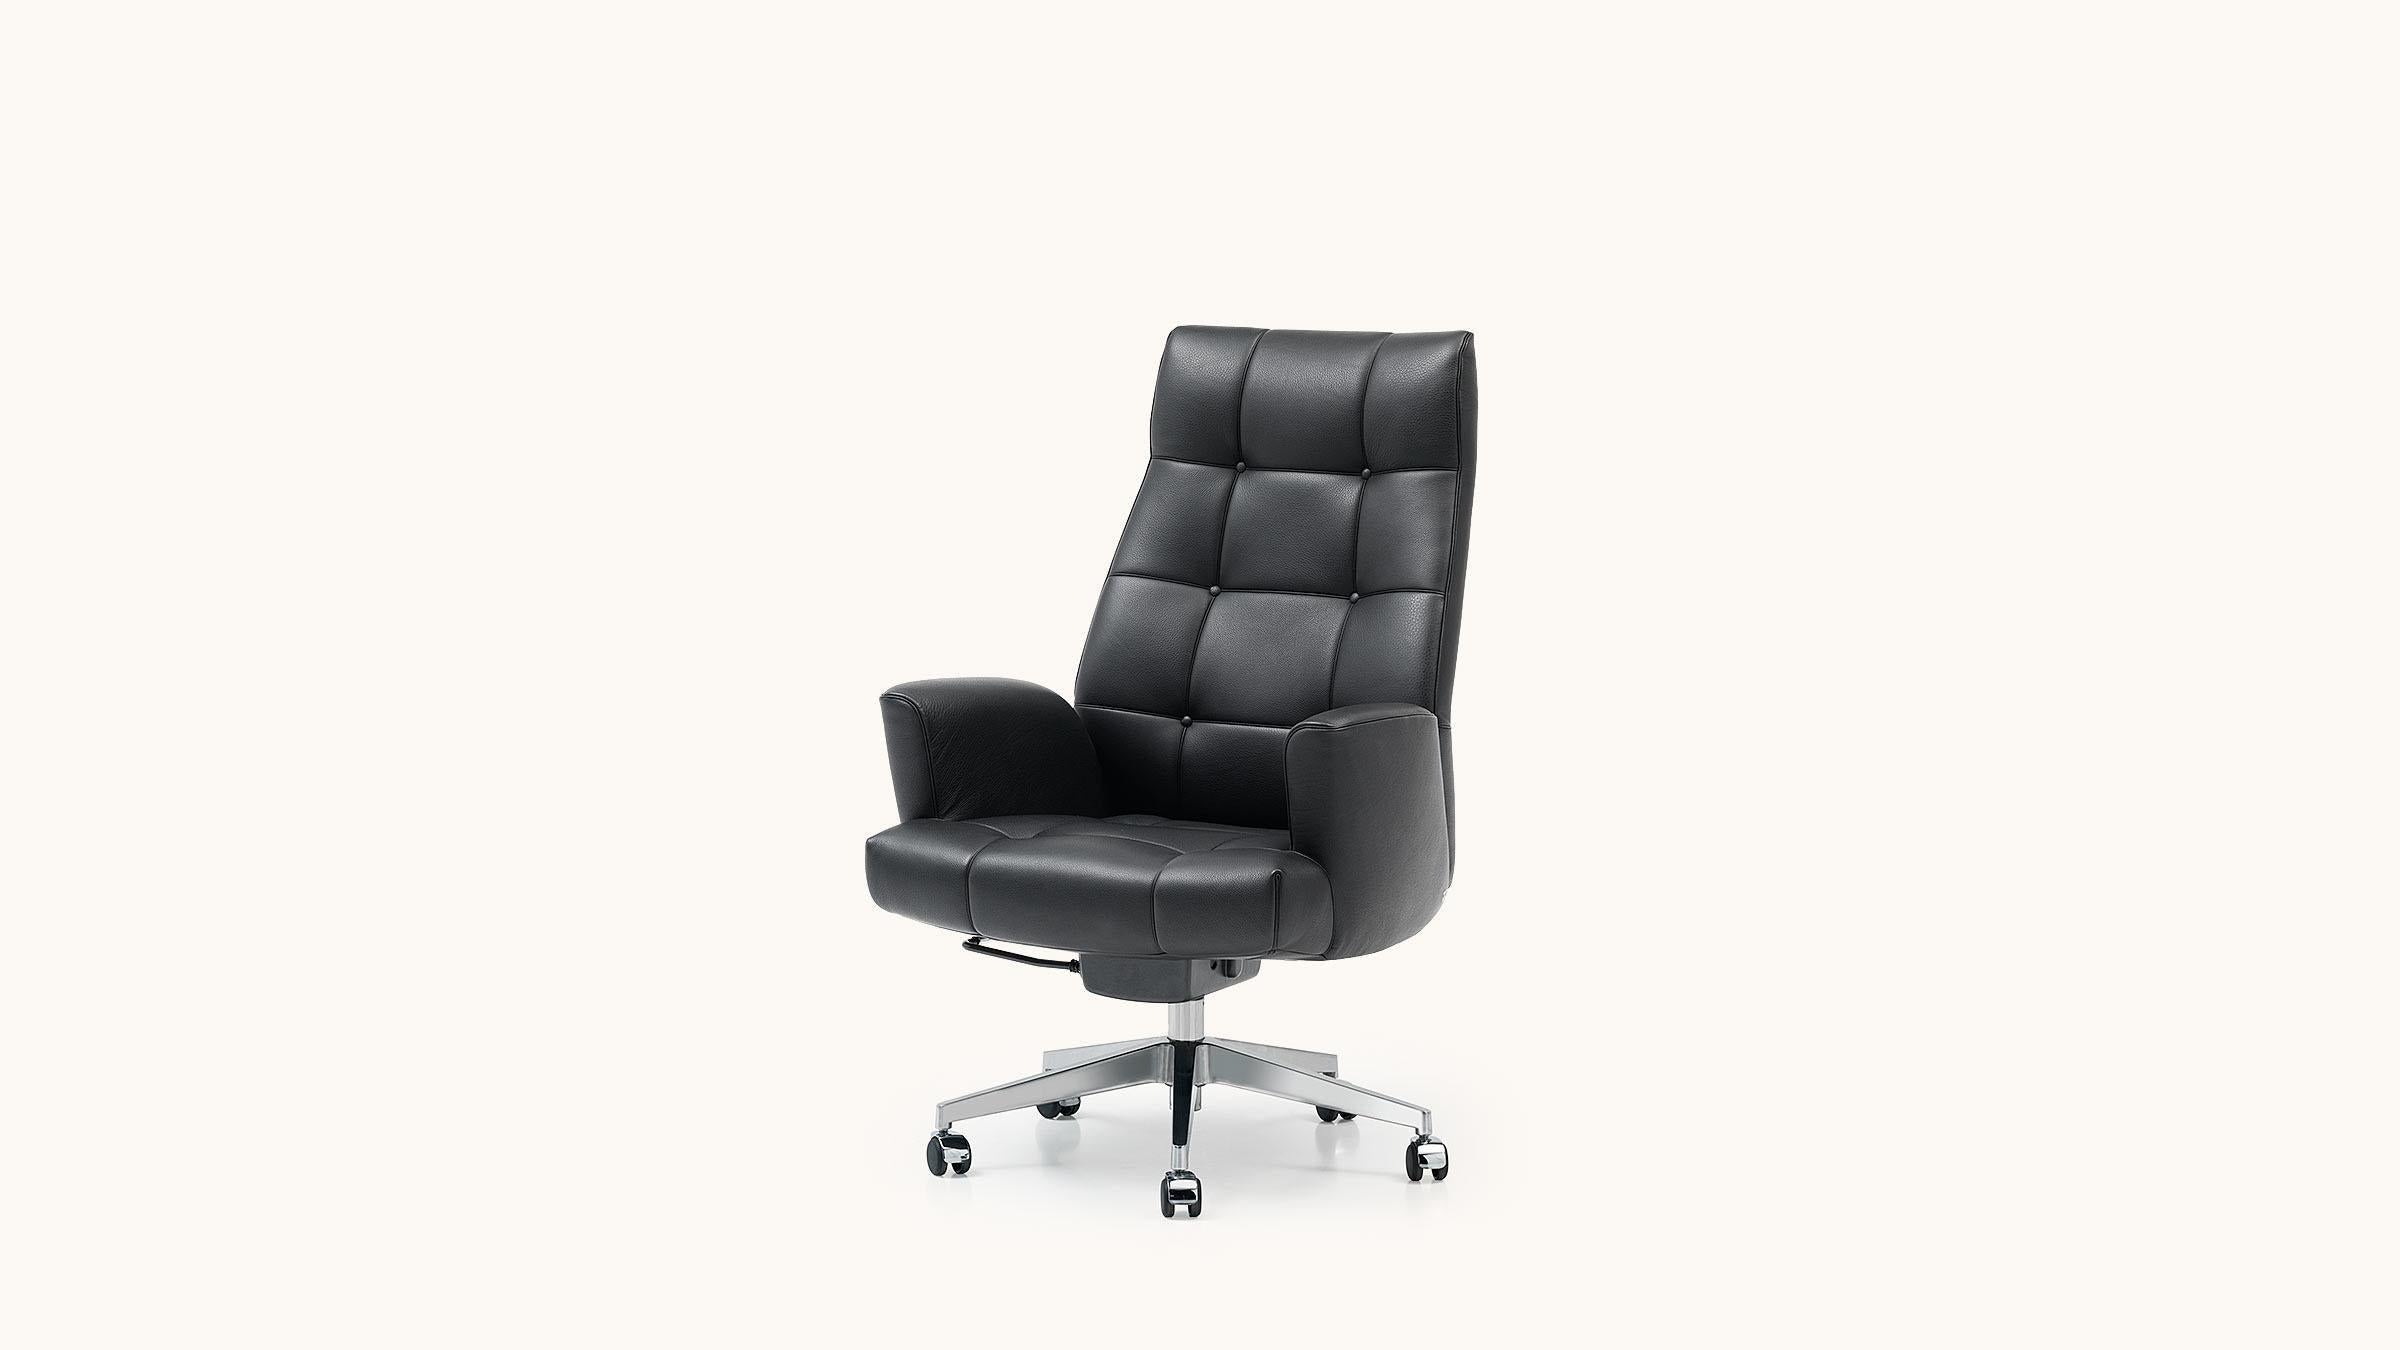 Bequemes Sitzen ist hier das Gebot der Stunde! Als klassischer Chefsessel konzipiert, ist der DS-257 die perfekte Wahl für konzentriertes und zugleich komfortables Arbeiten, gemacht für alle mit hohen Ansprüchen bei der Büroarbeit. Für langes,